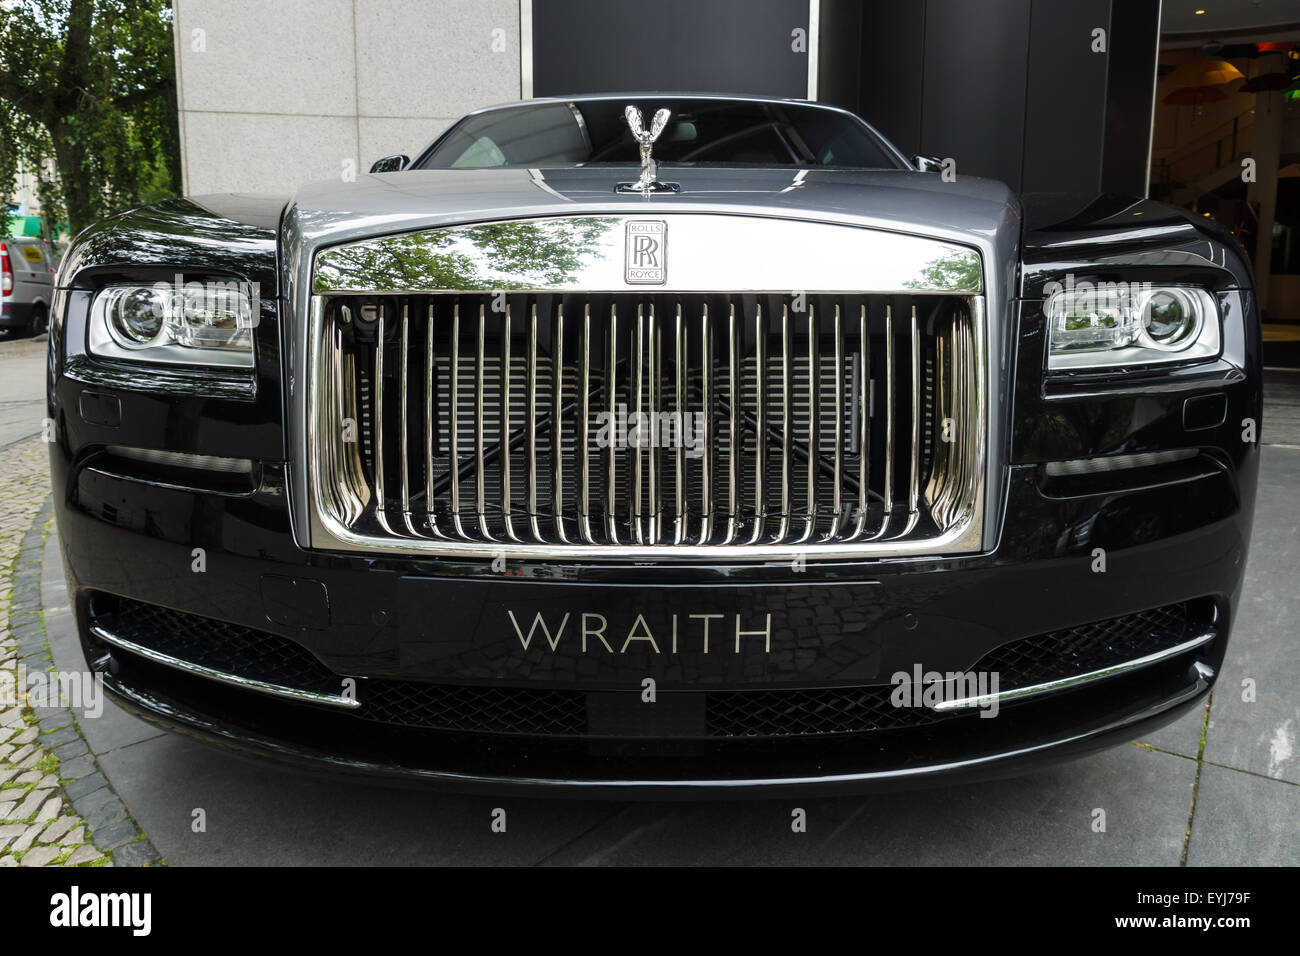 Rolls-Royce Wraith Coupé in Schwarz gebraucht in Berlin für